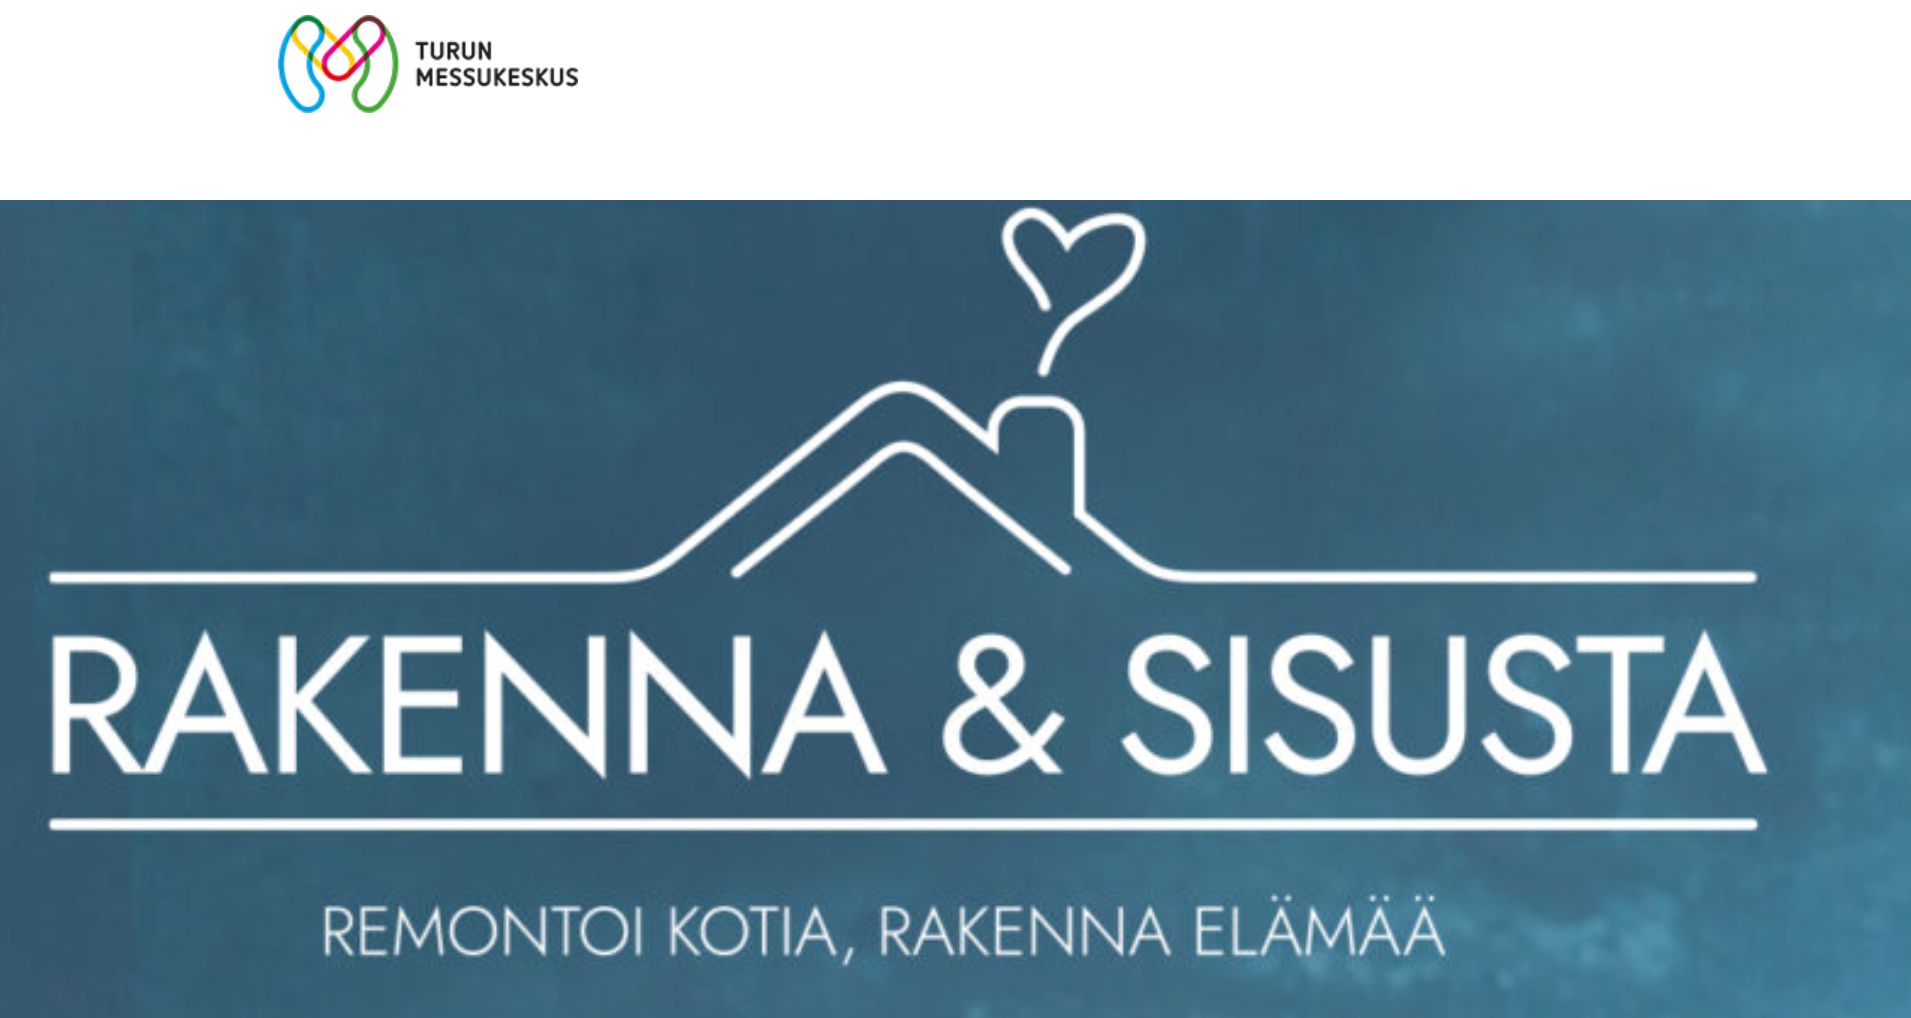 RAKENNA & SISUSTA MESSUT TURUN MESSUKESKUKSESSA 10.-12.2.2023